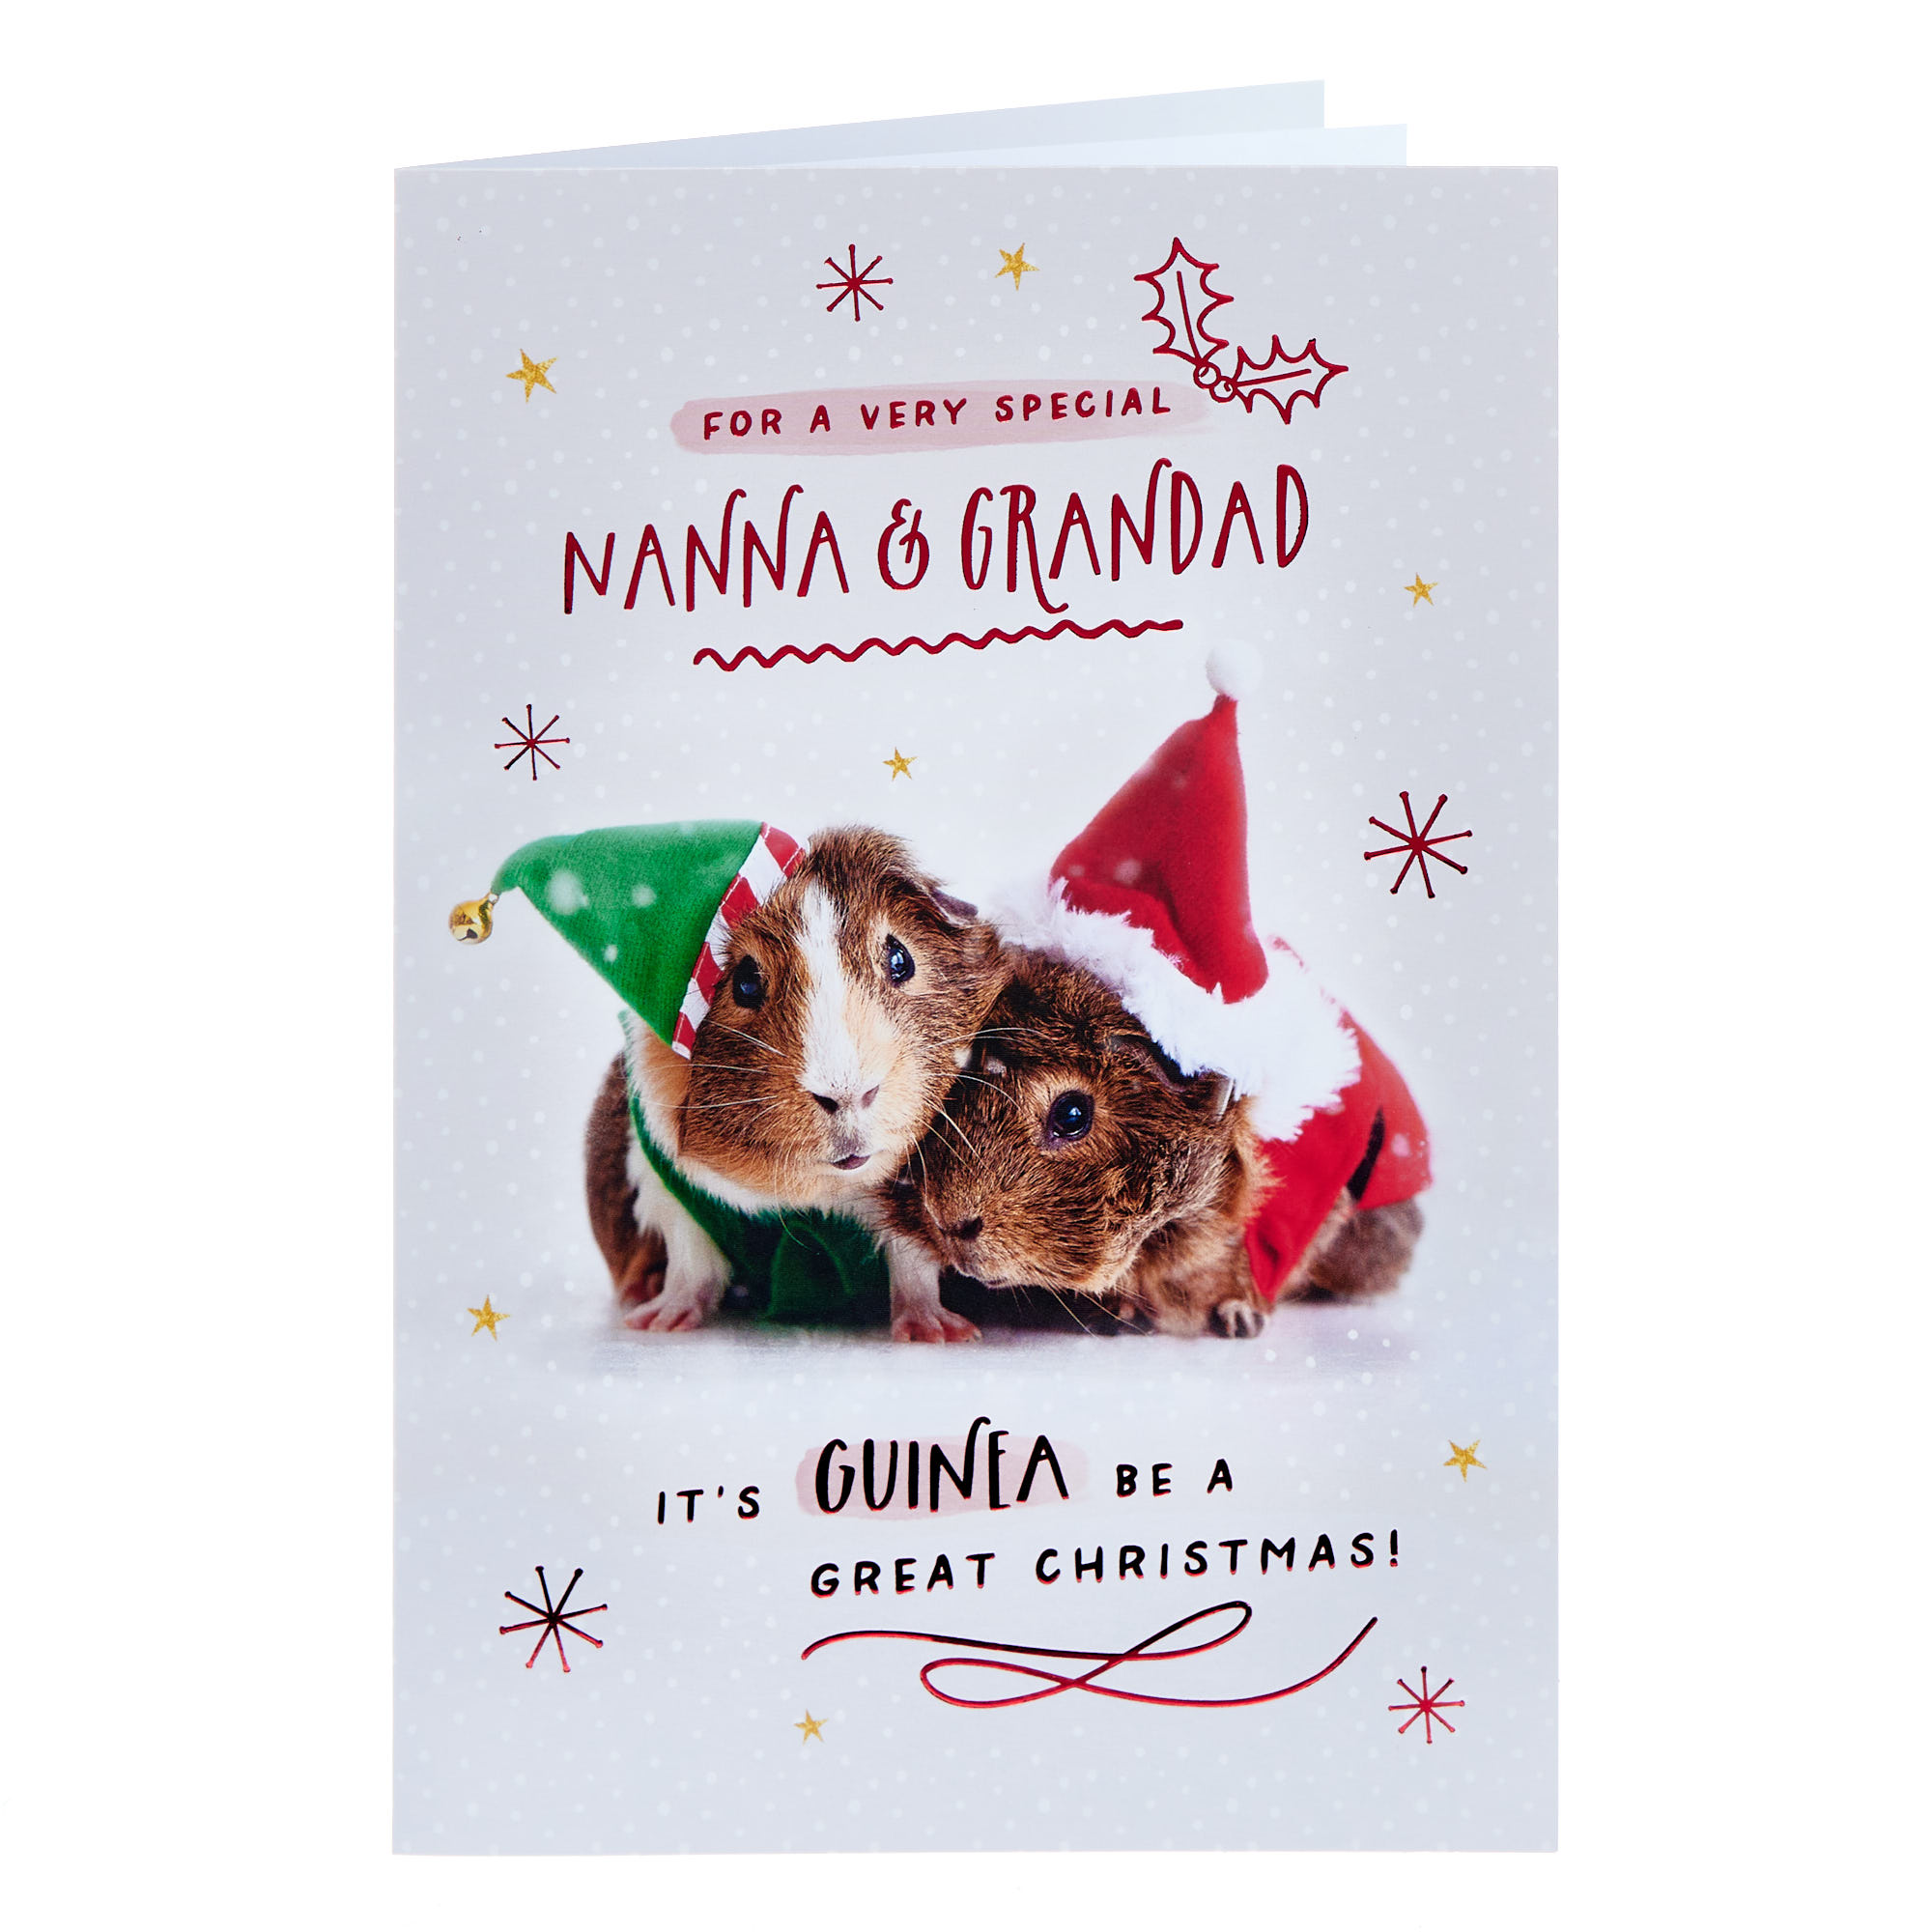 Nanna & Grandad Guinea Pigs Christmas Card